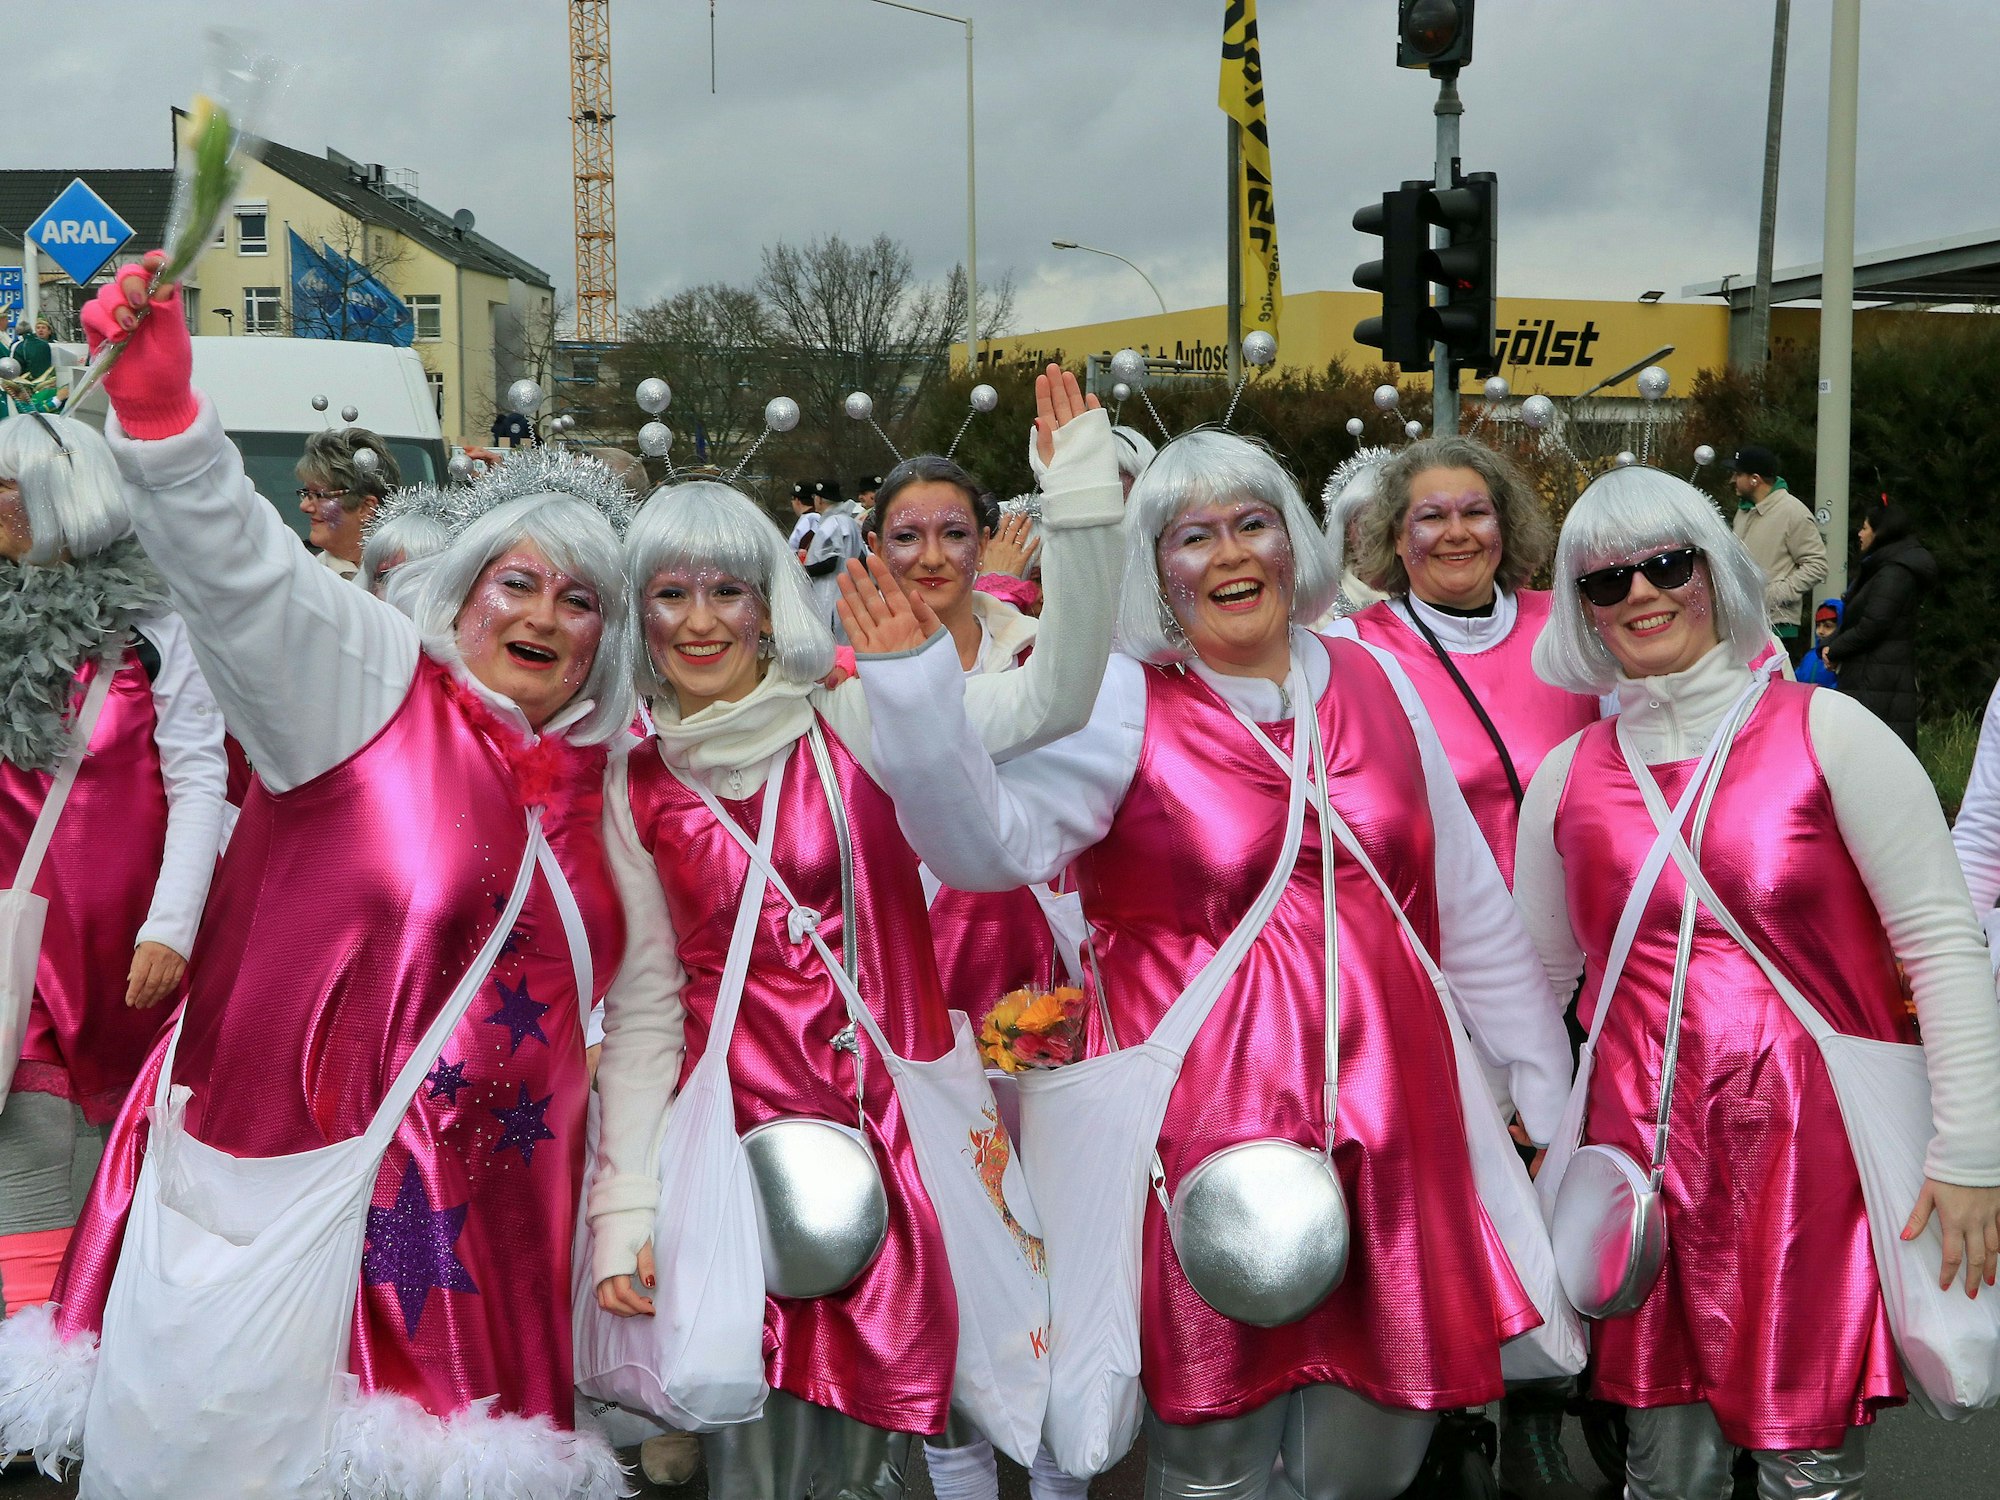 Frauen haben rosa Kostüme an, silberne Perücken auf.